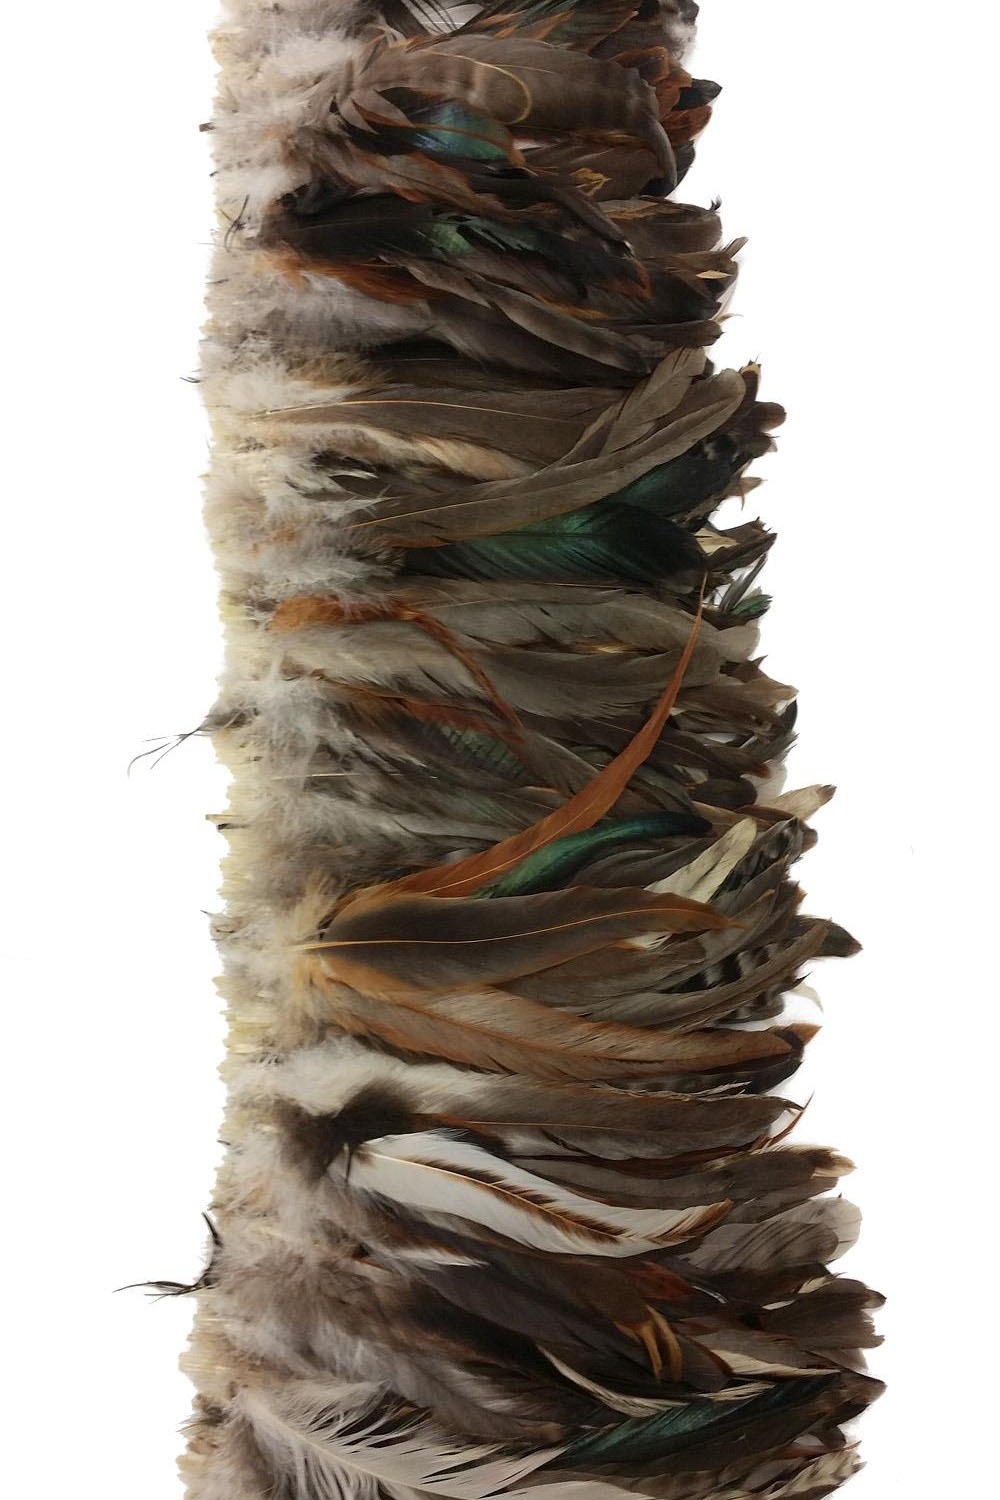 Hahnenschlappen Sussex 20-25cm natur